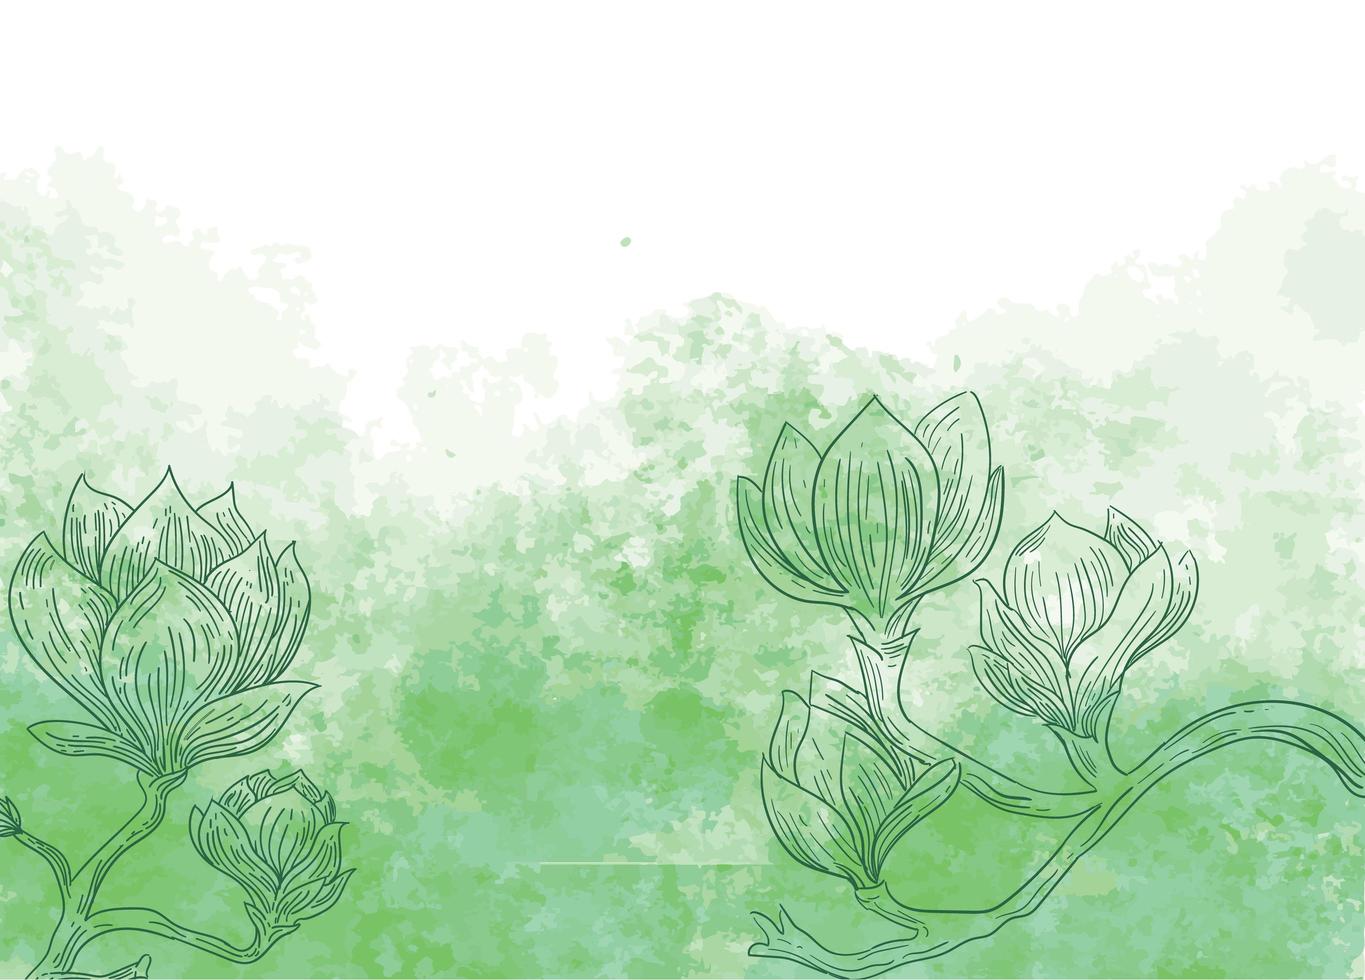 Blumen auf grünem Aquarellhintergrund vektor